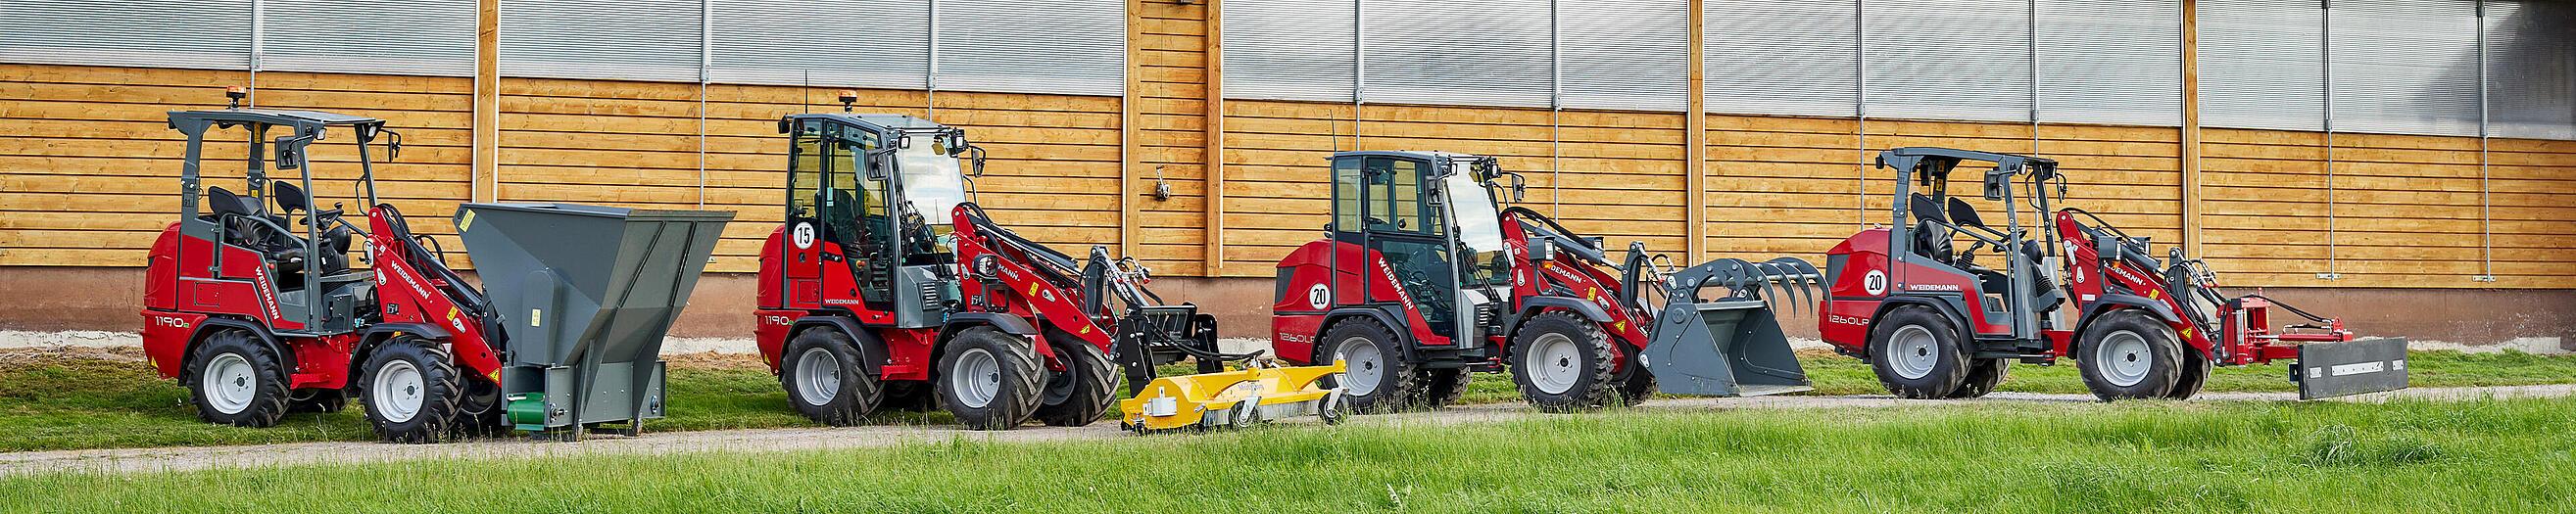 Różne maszyny Hoftrac marki Weidemann ustawione przez zakładem rolniczym